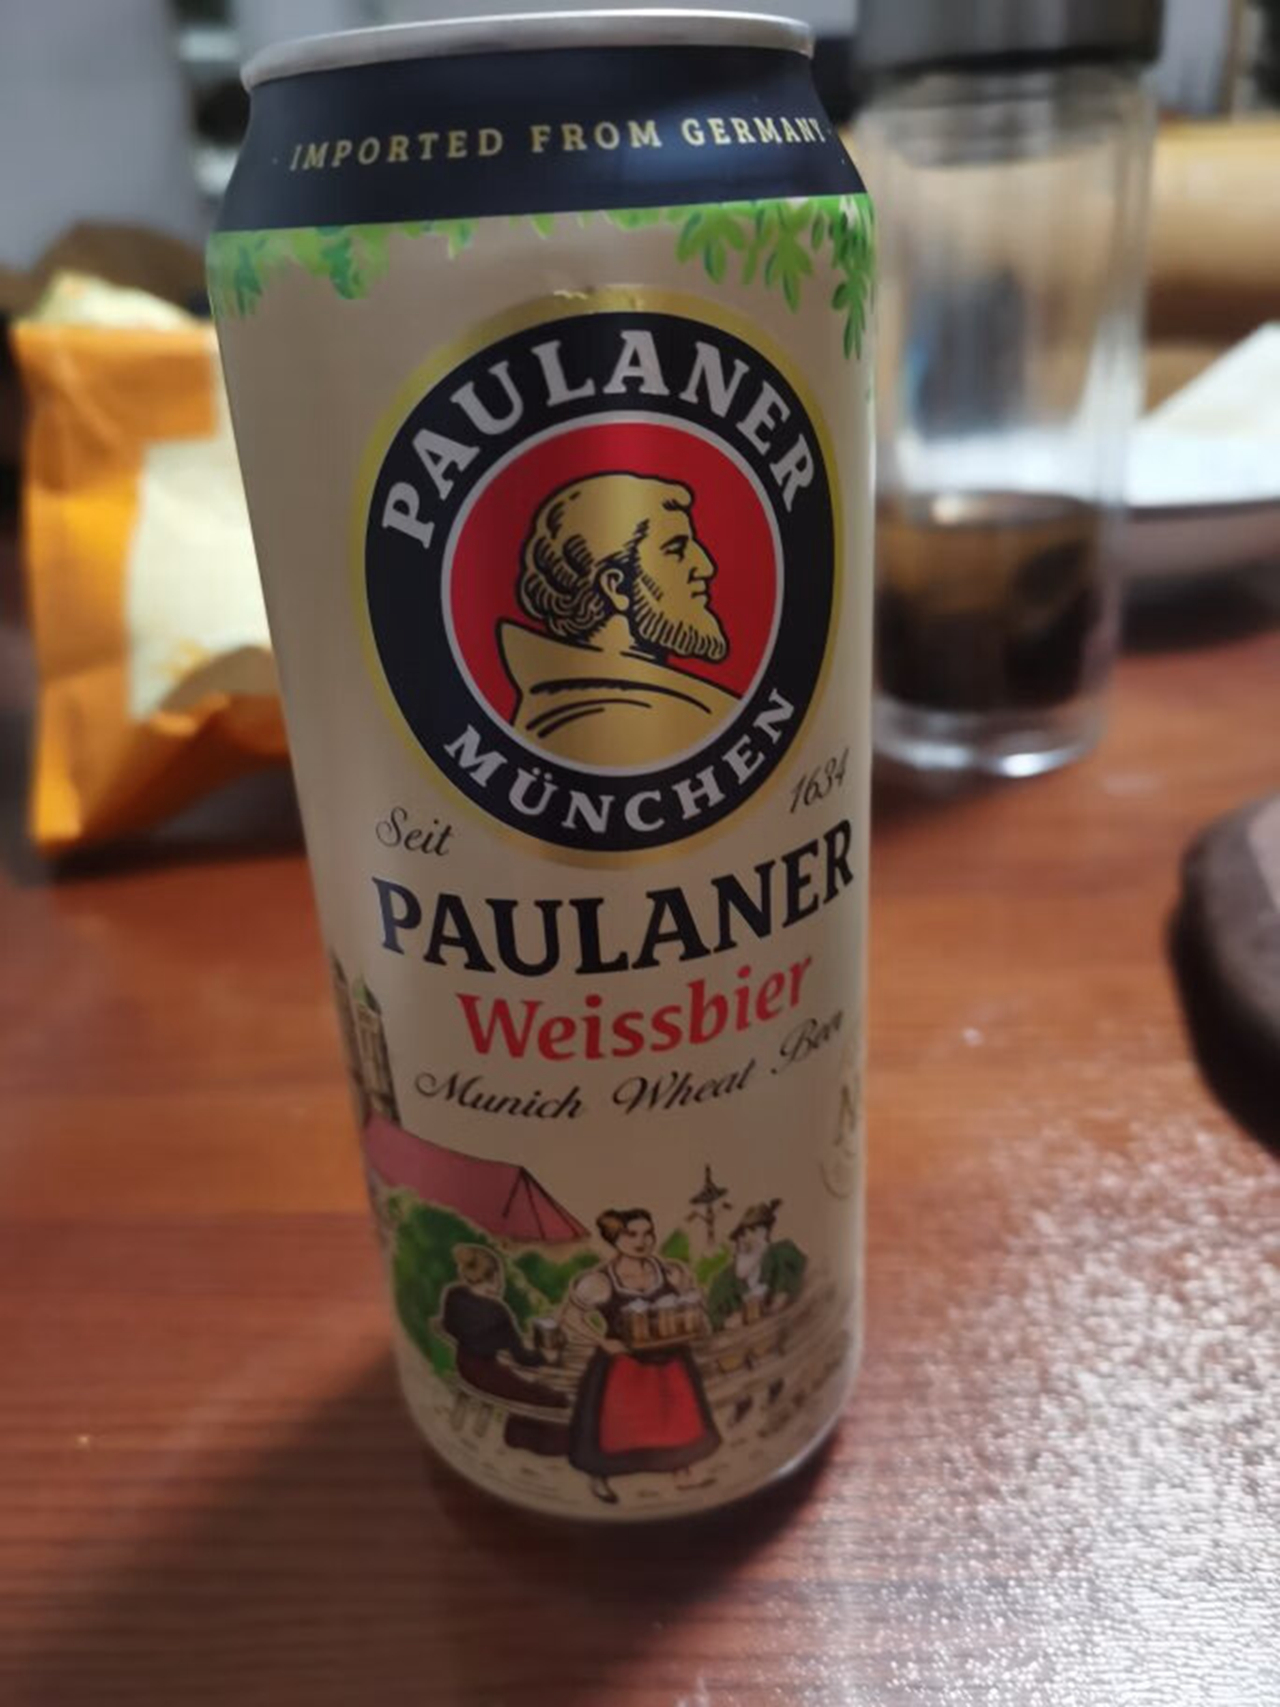 德国名啤保拉纳白啤酒,浓郁香醇,清爽醇厚,传统慕尼黑风味